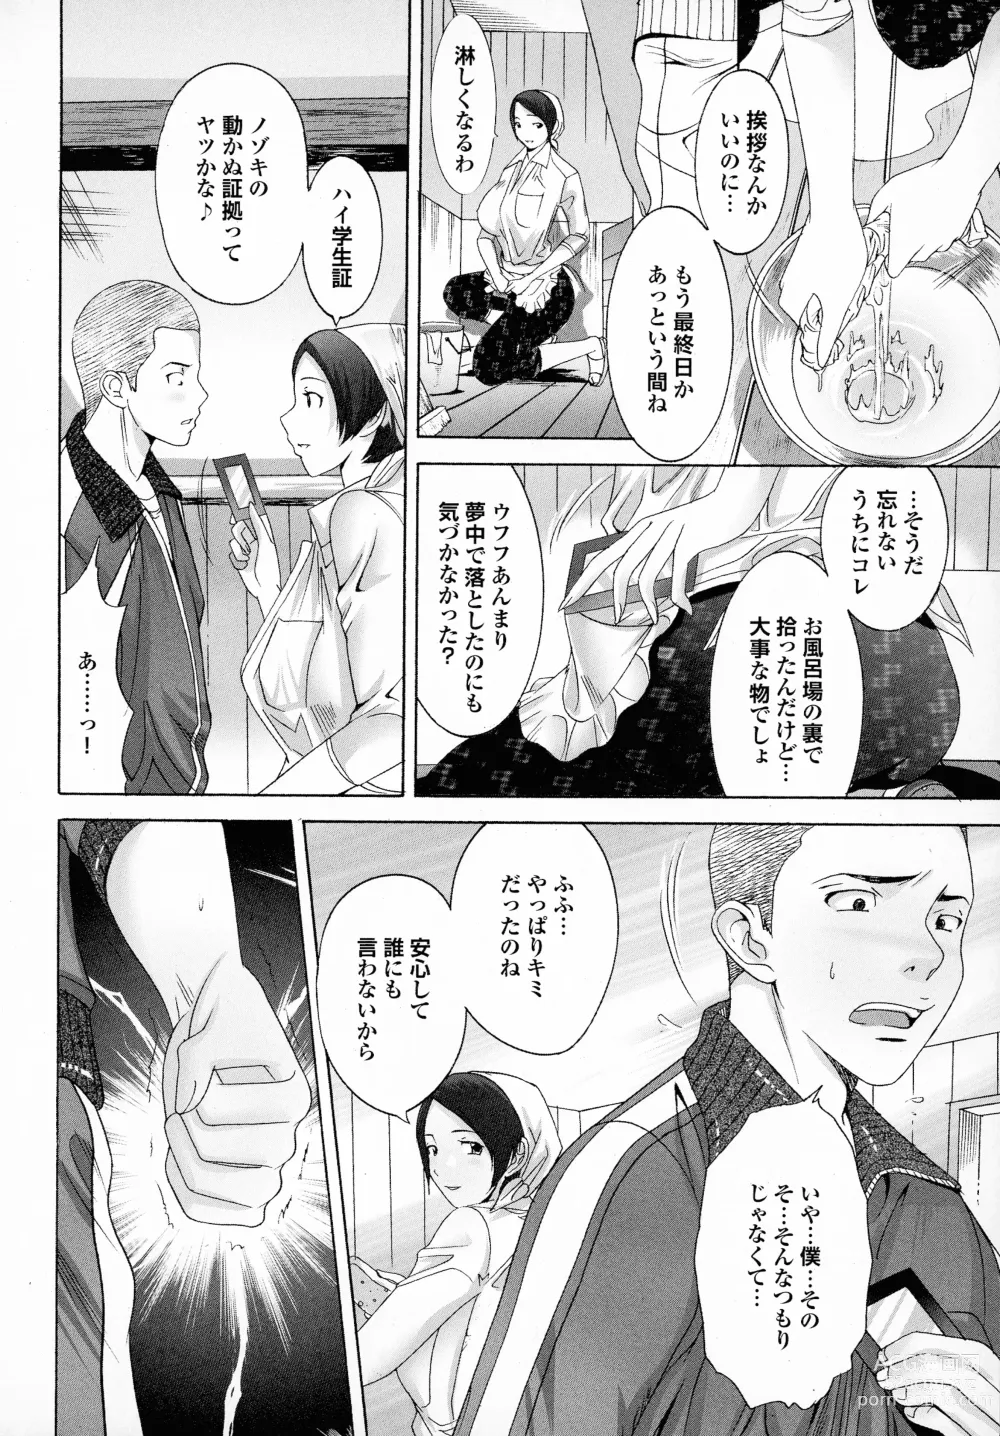 Page 166 of manga Okaa-san mo Issho